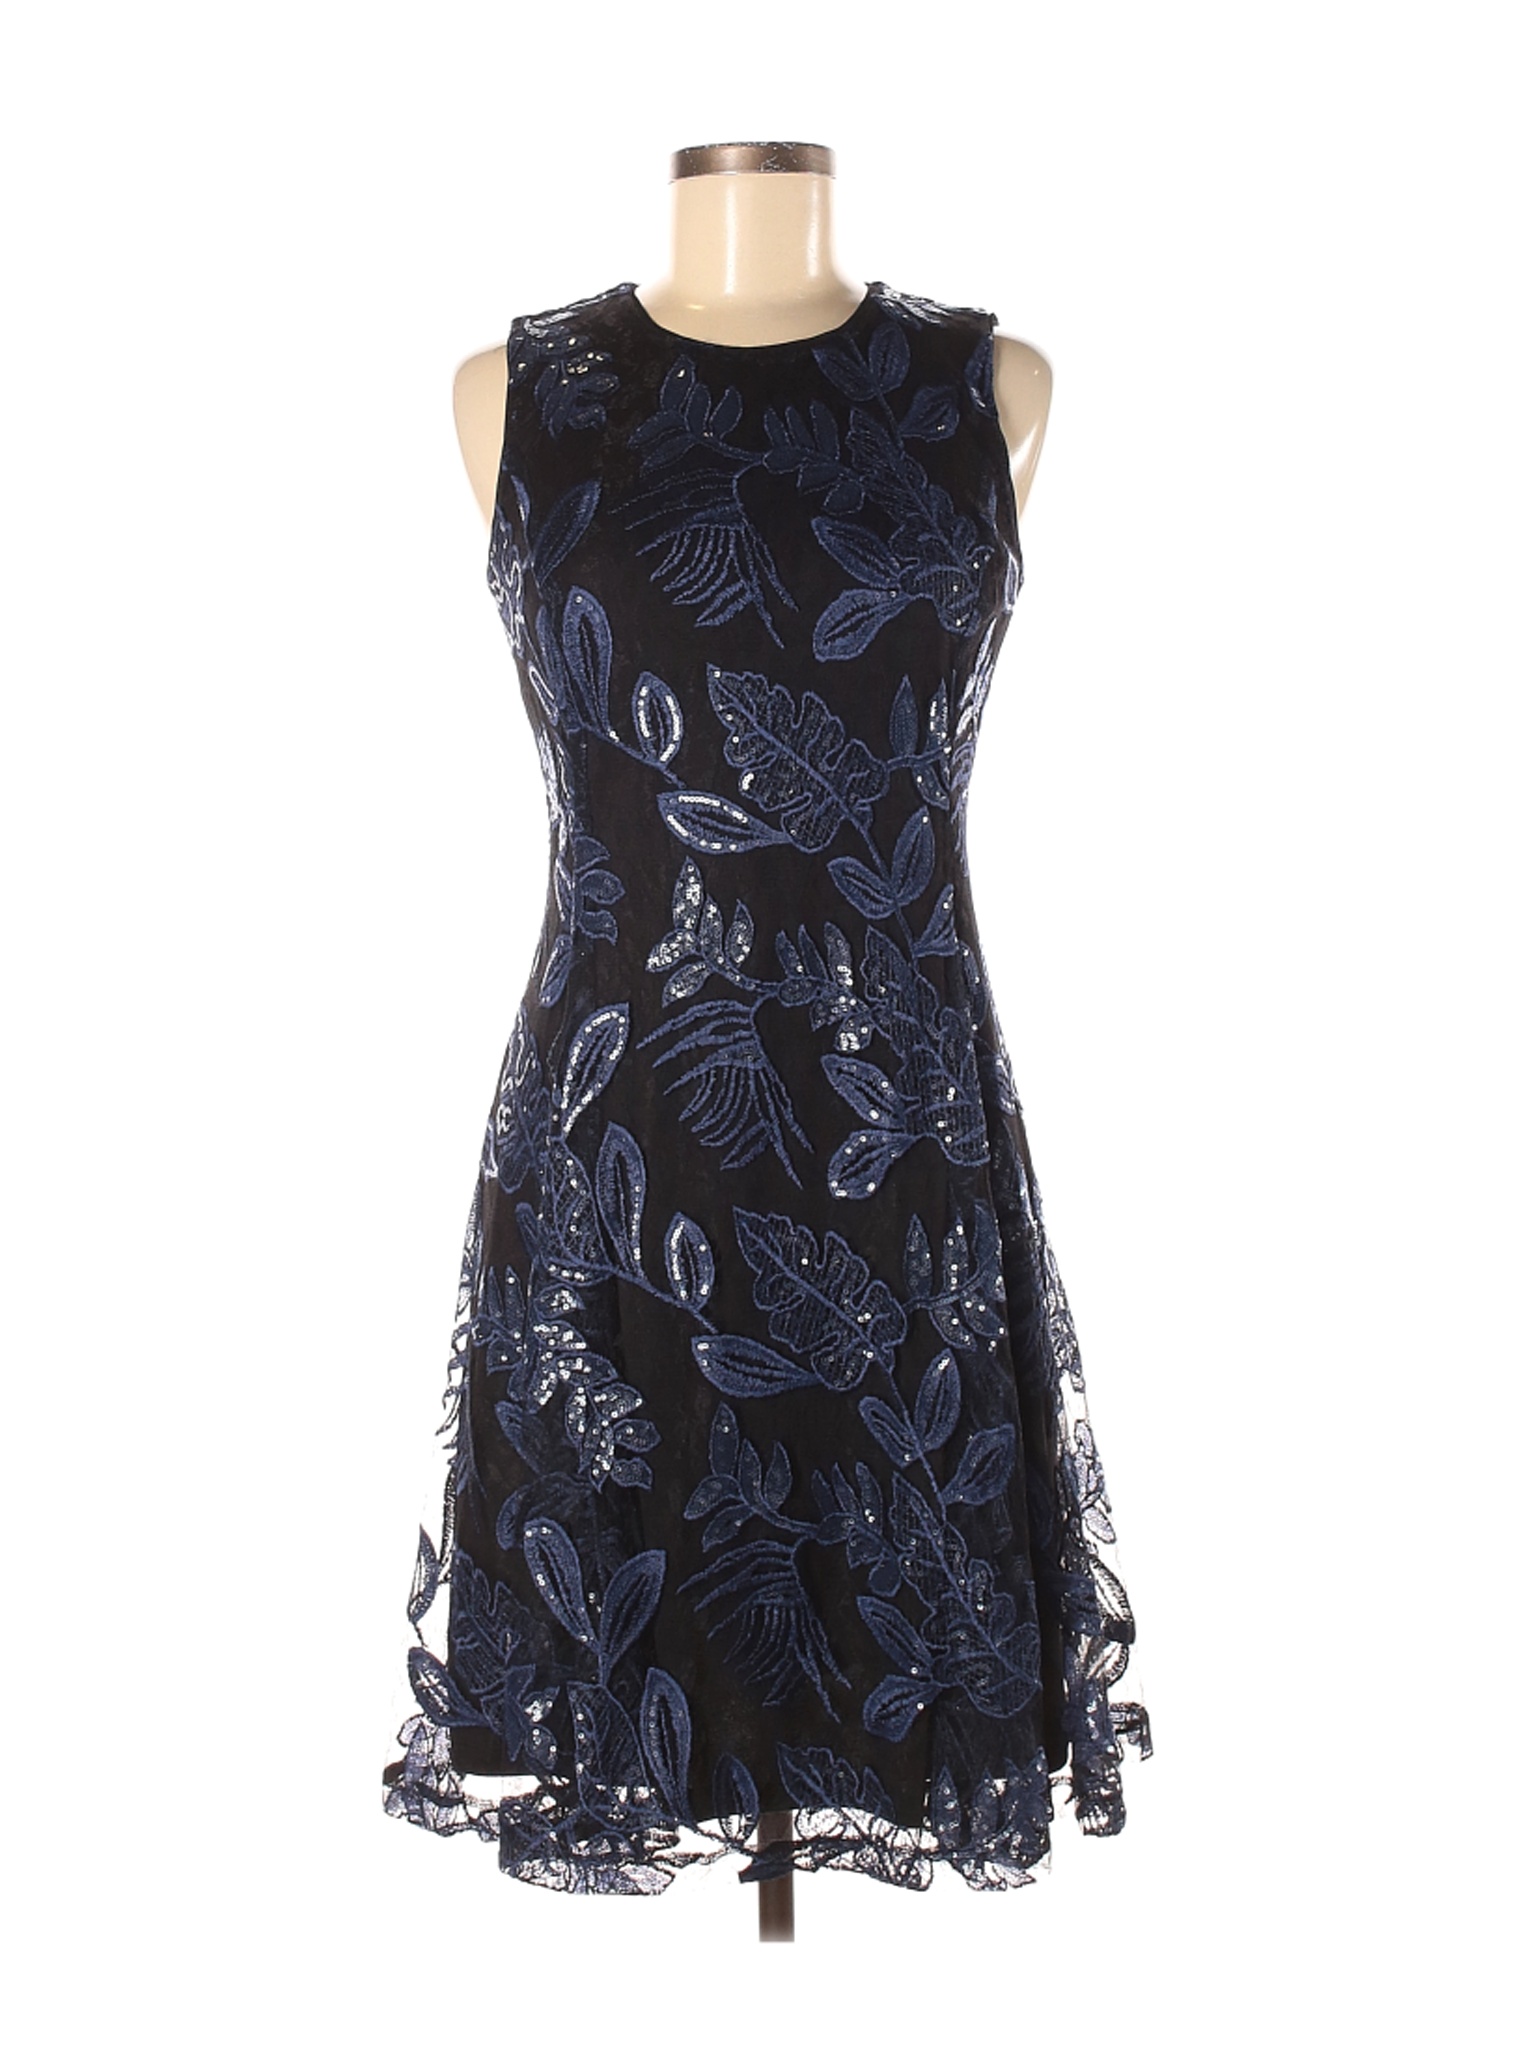 NWT DKNY Women Blue Cocktail Dress 4 | eBay